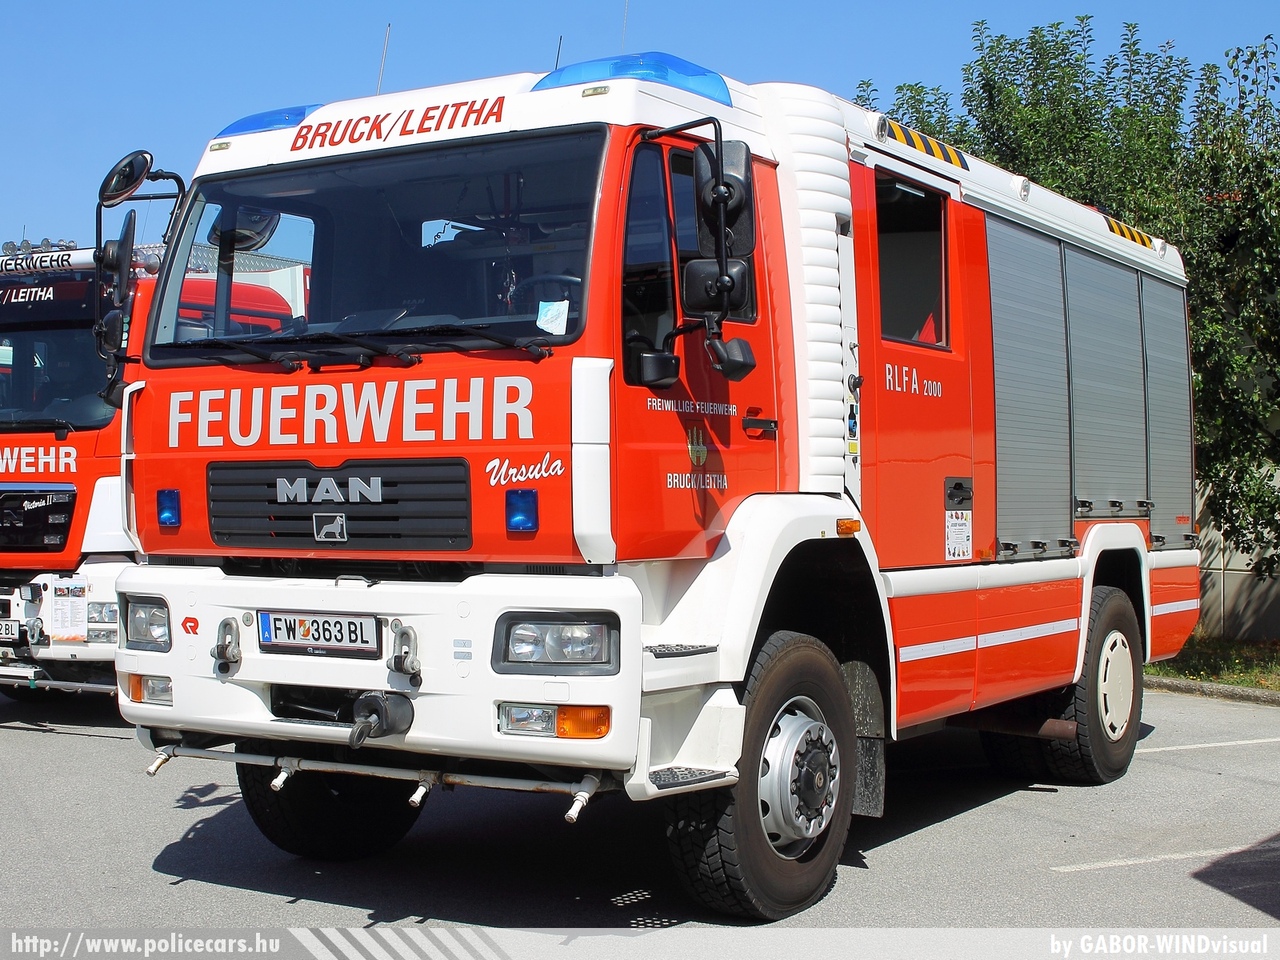 MAN RLF-A 2000, Freiwillige Feuerwher Bruck/Leitha, fotó: GABOR-WINDvisual
Keywords: osztrák Ausztria tûzoltó tûzoltóautó tûzoltóság fire firetruck Austria